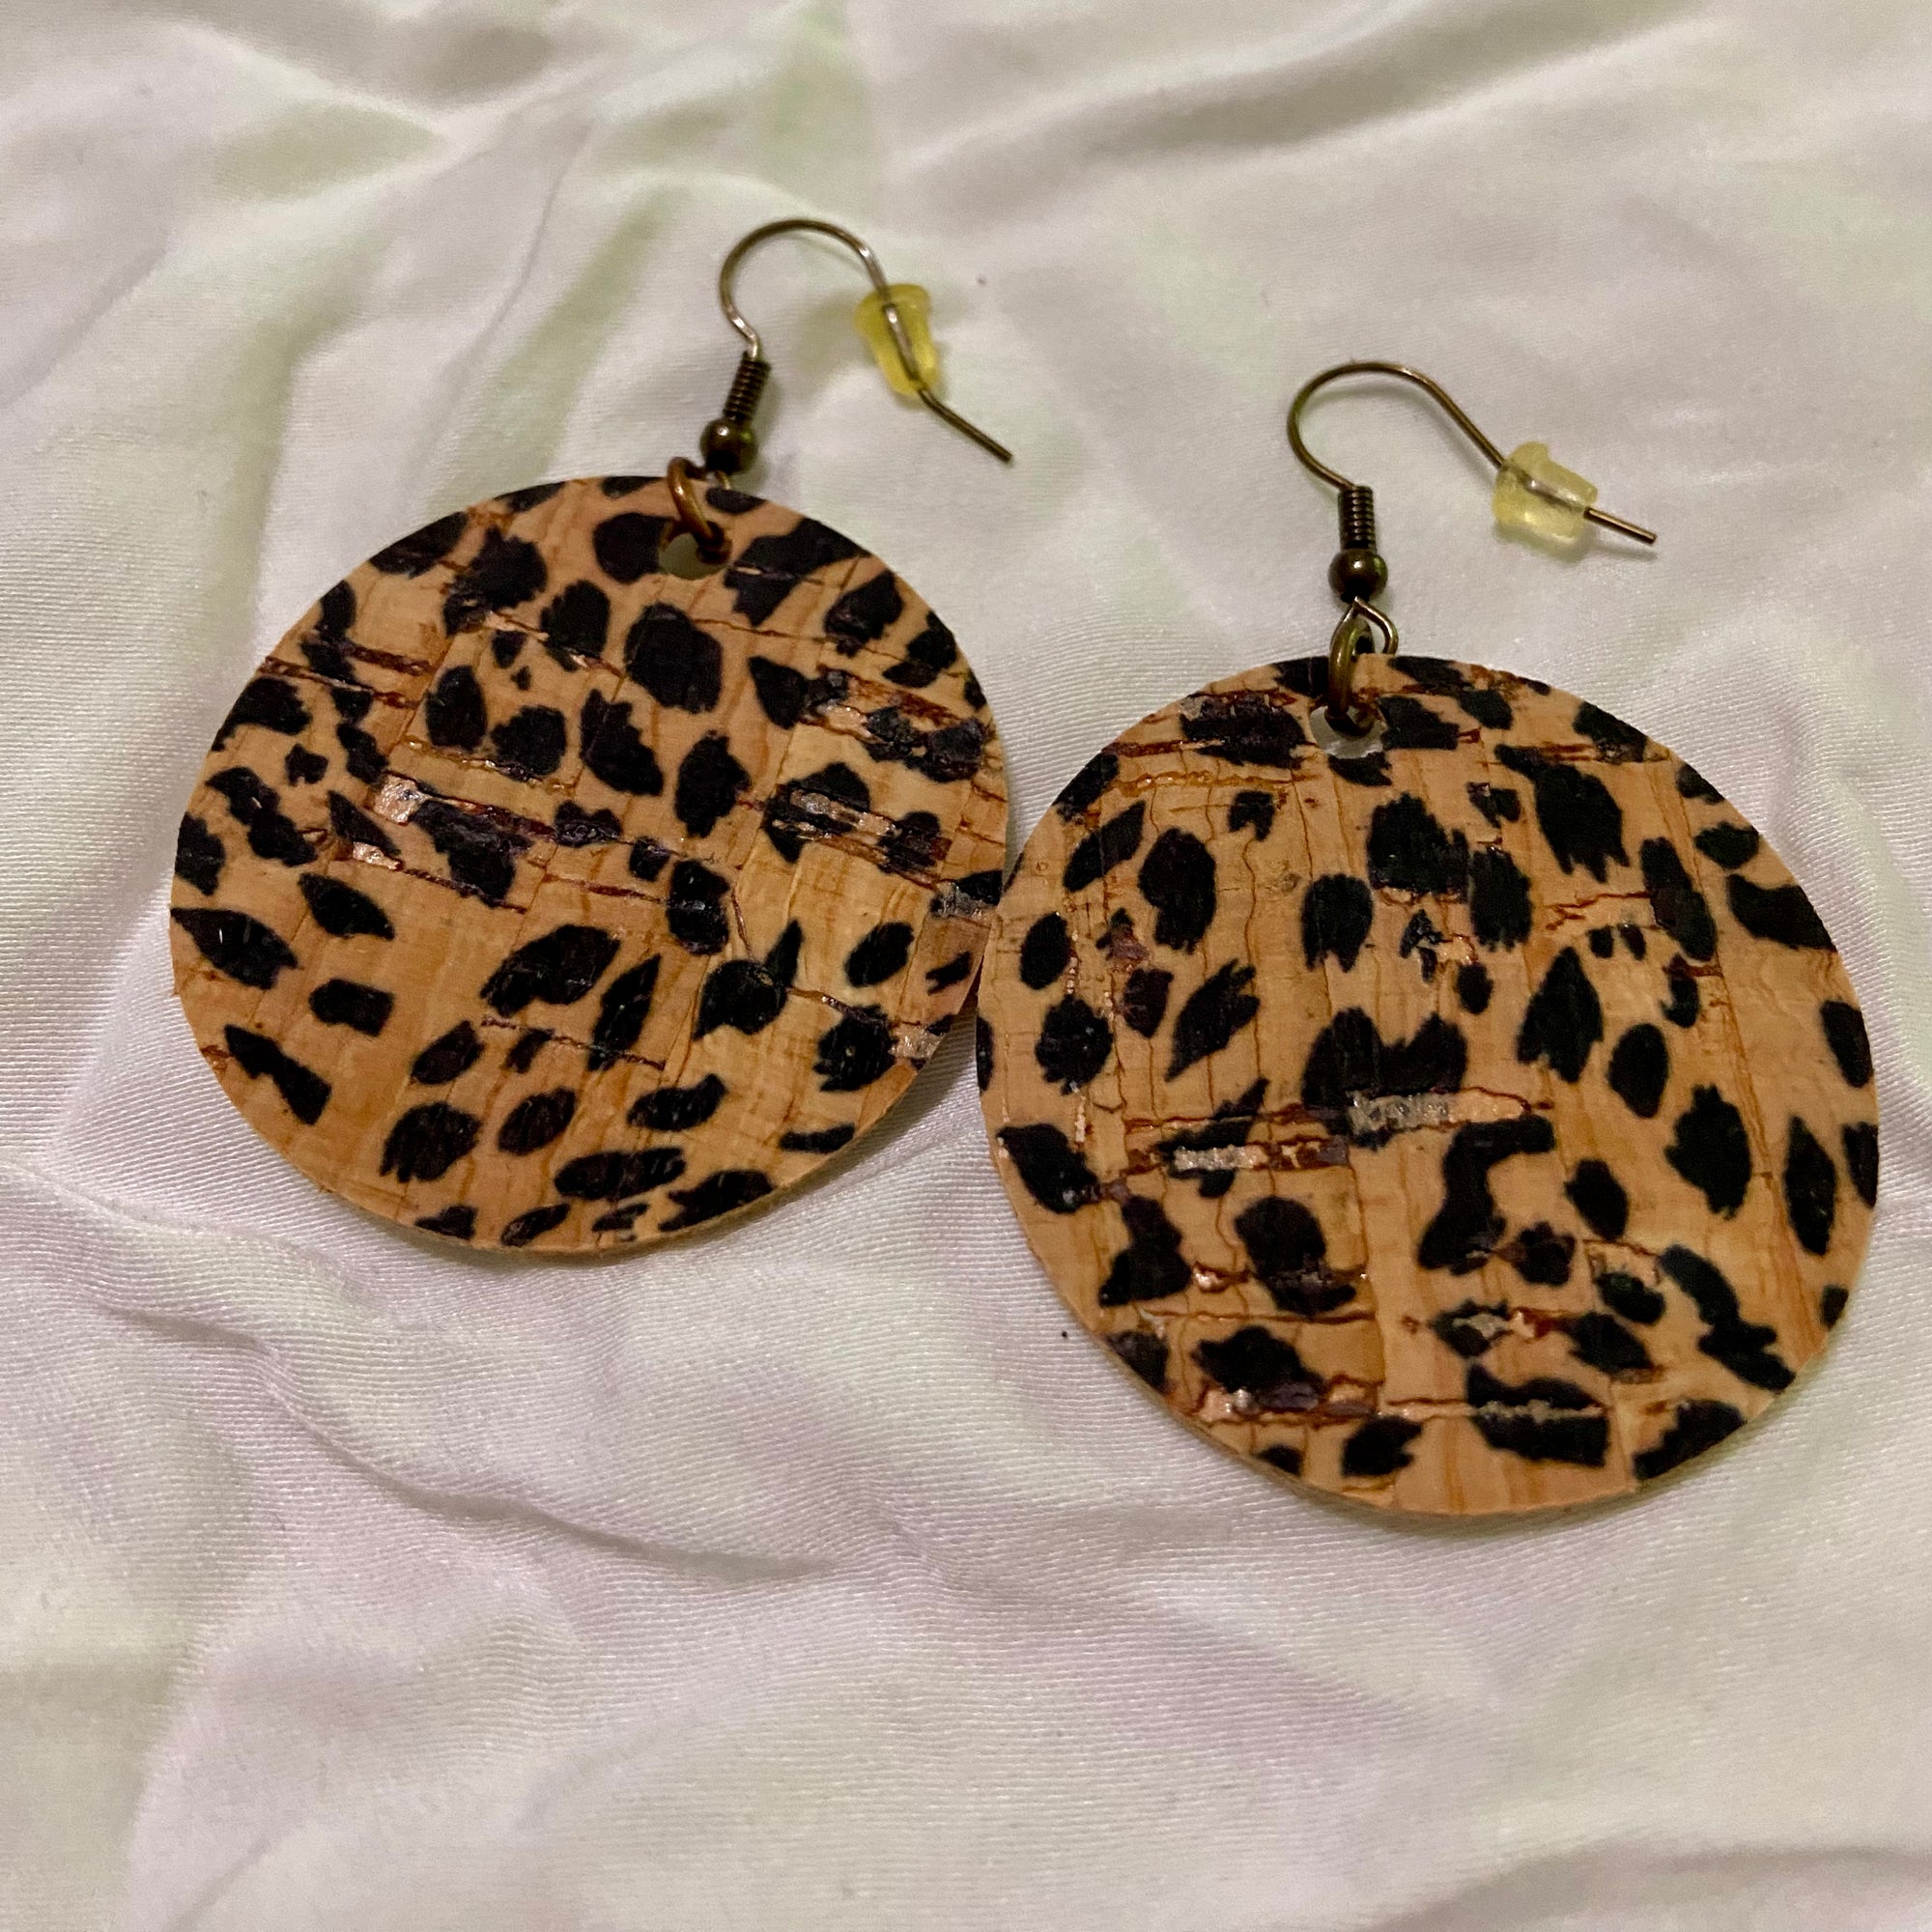 B. Light Earrings - Cheetah print Cork Circle Earrings